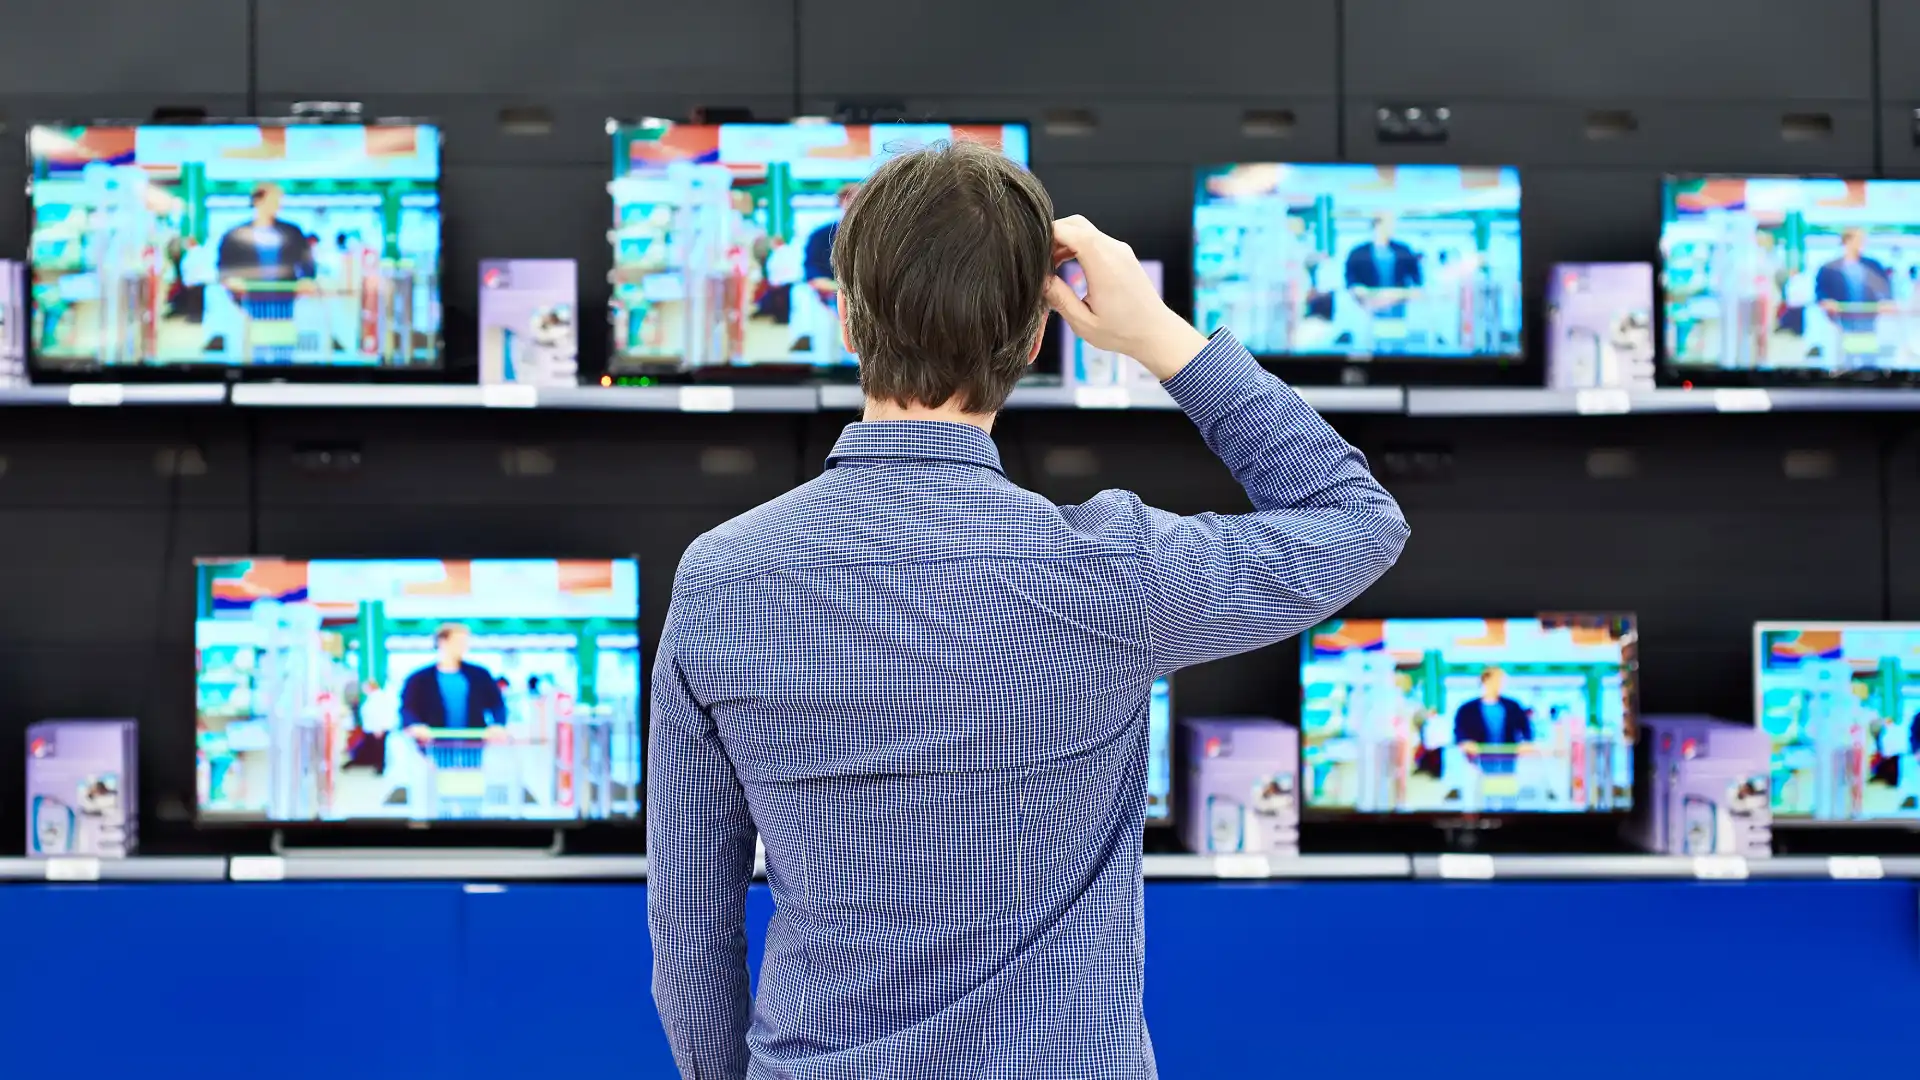 Homem parado olhando vários televisores em uma loja